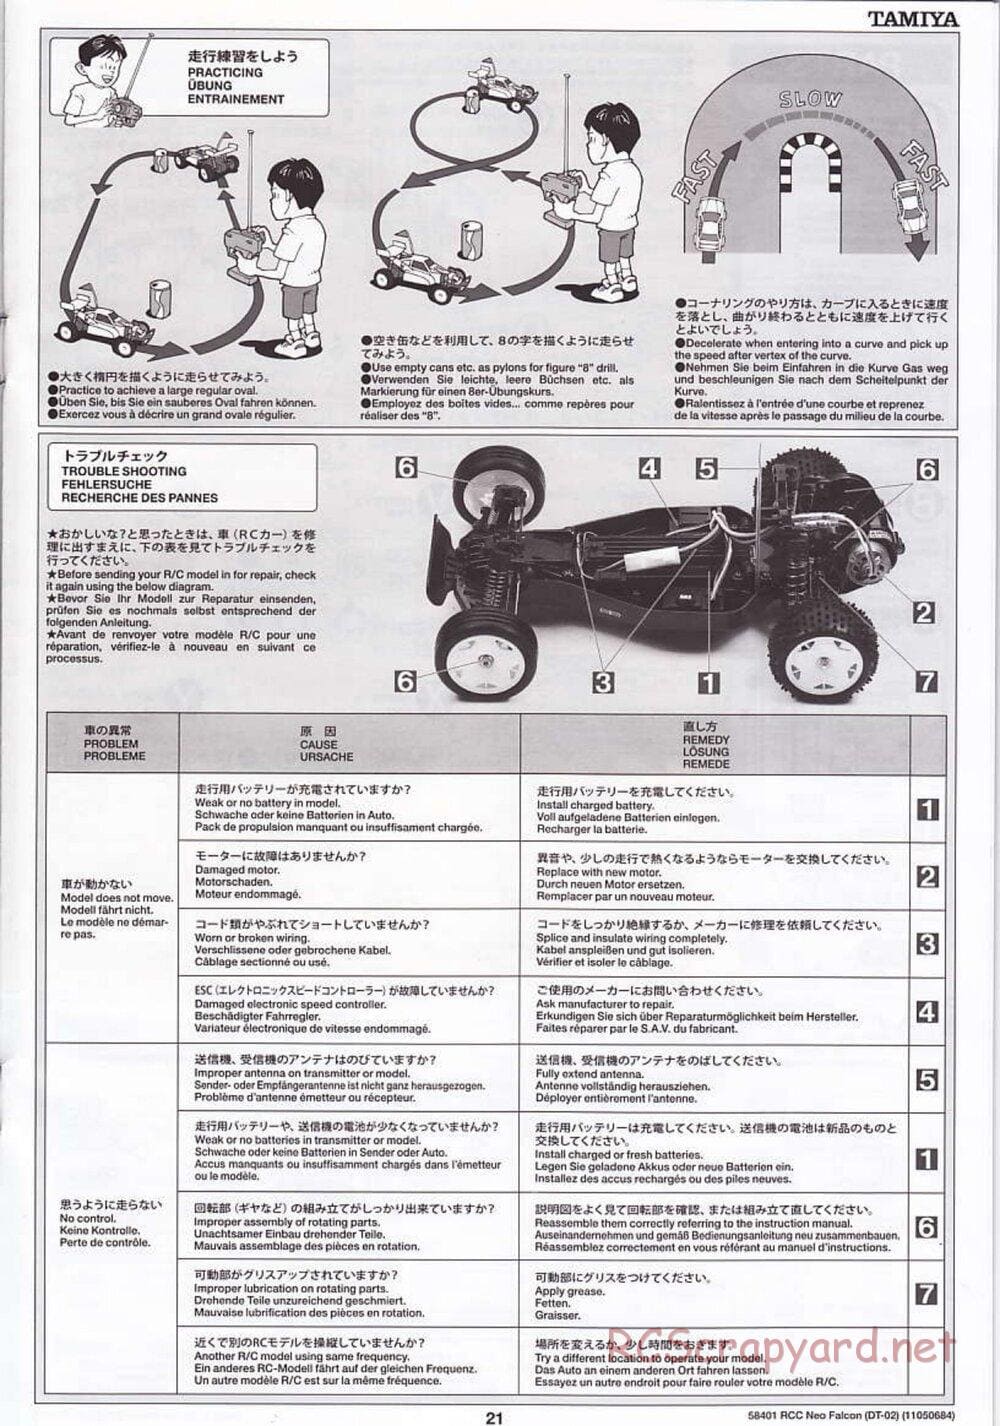 Tamiya - Neo Falcon Chassis - Manual - Page 21